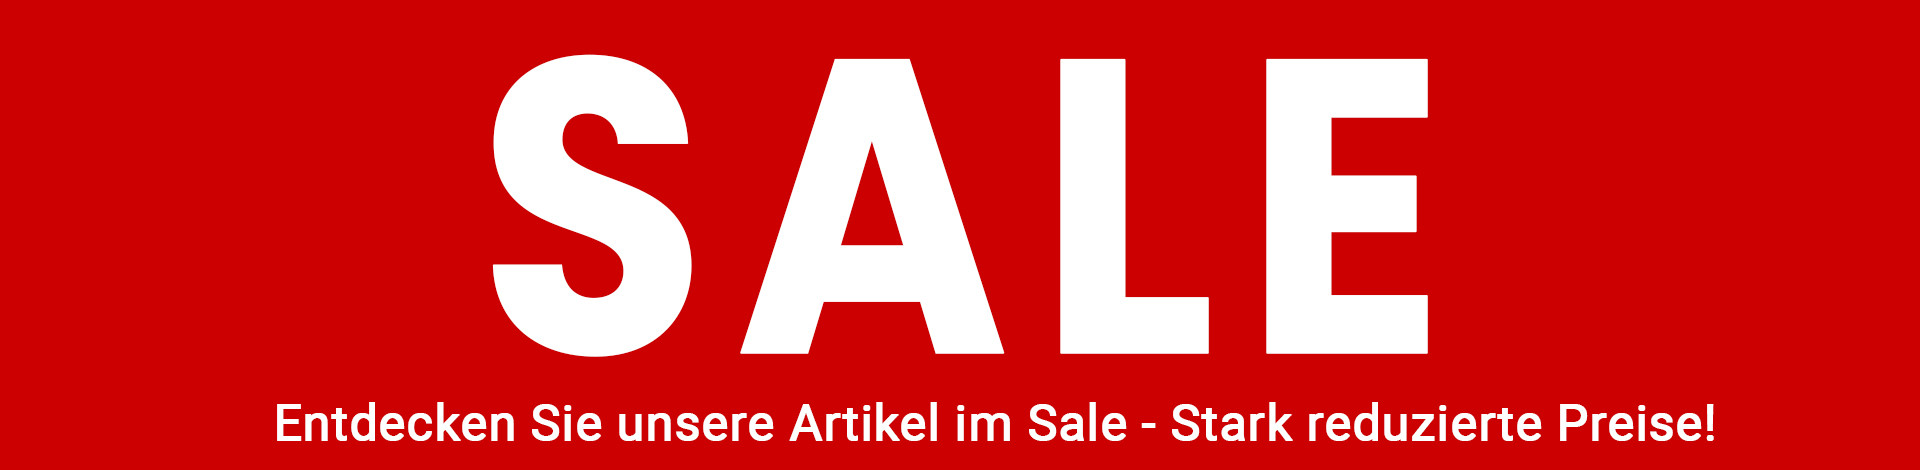 All4home.ch - Sale! Entdecken Sie unsere Artikel im Sale - Stark reduzierte Preise